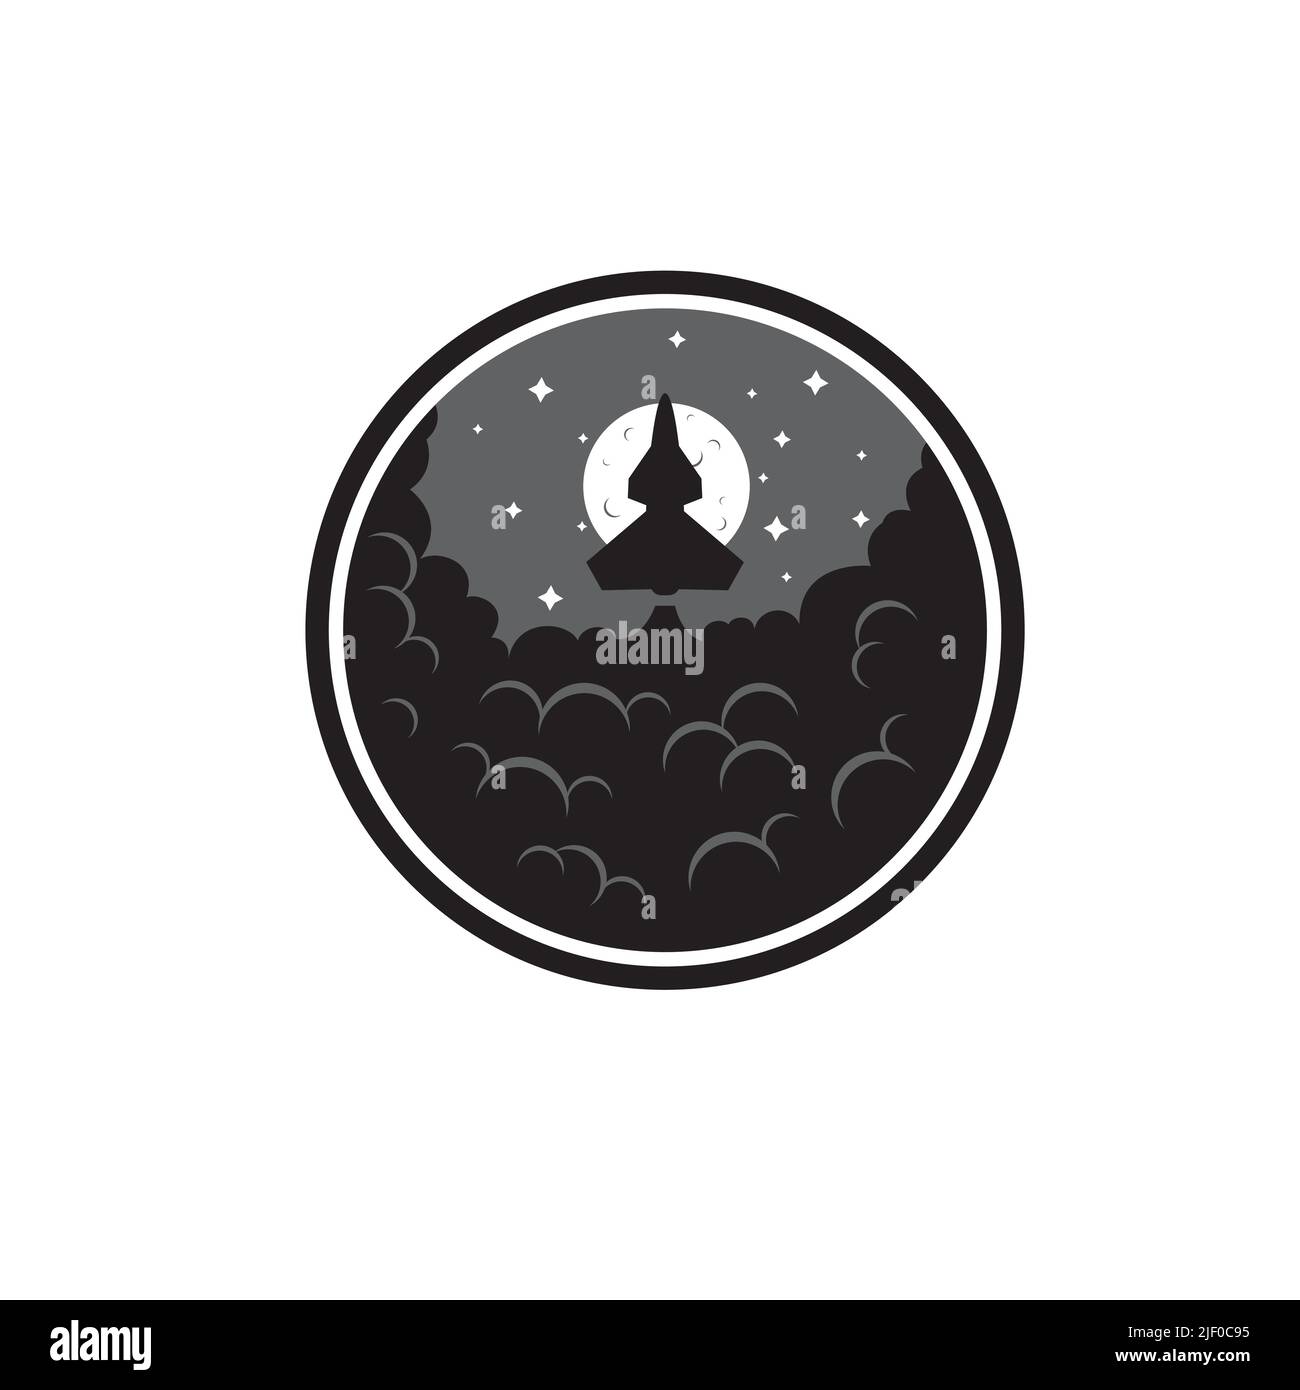 Icona circolare della navicella spaziale di lancio con luna fumante e stelle isolate su sfondo bianco Illustrazione Vettoriale